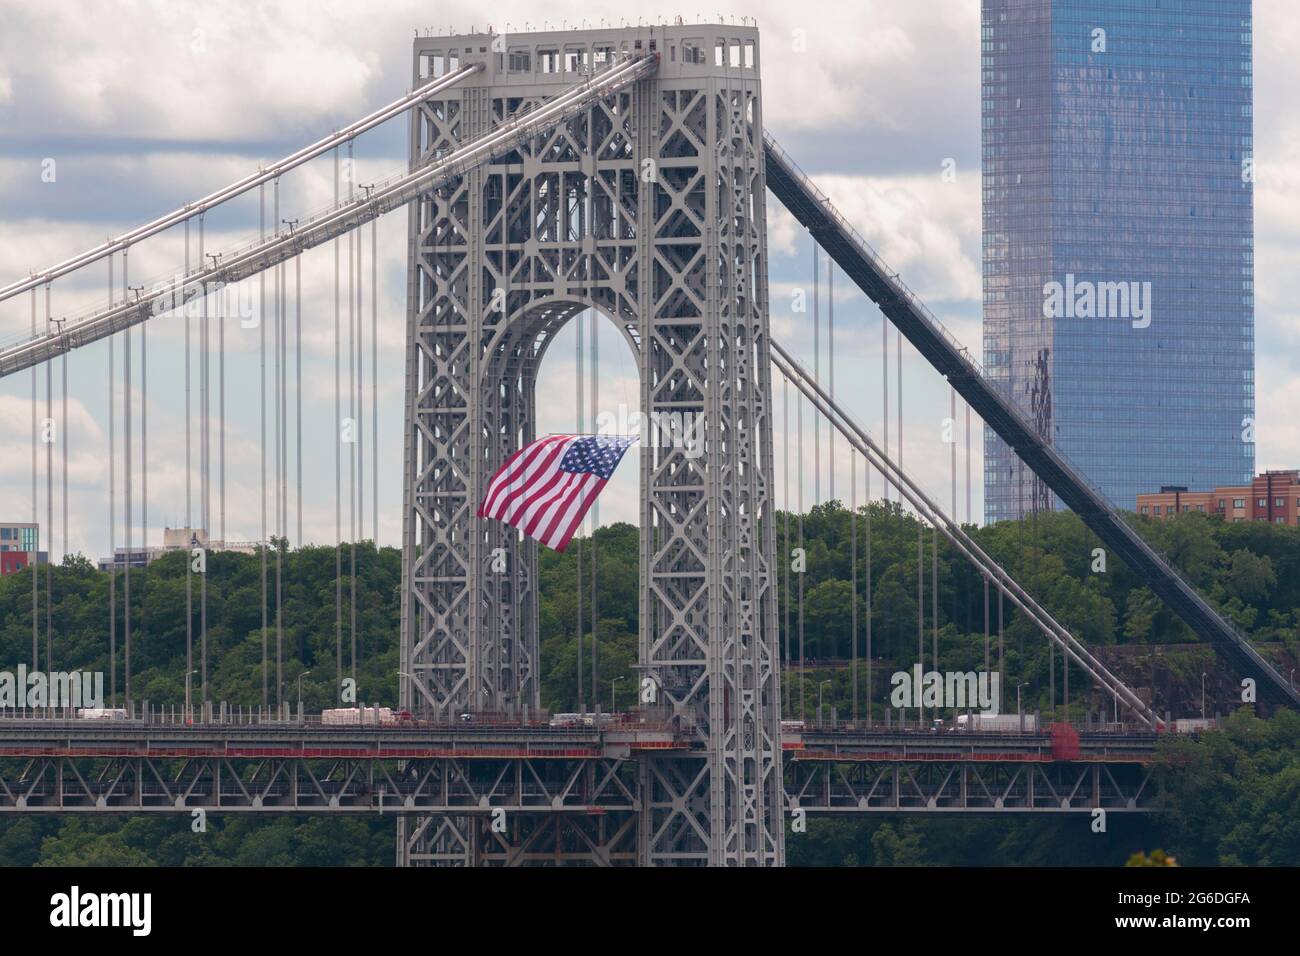 Eine amerikanische Flagge hängt vom seitlichen Aufhängungsturm der George Washington Bridge in New Jersey, einer Doppeldeckerhängebrücke, die Manhattan verbindet Stockfoto